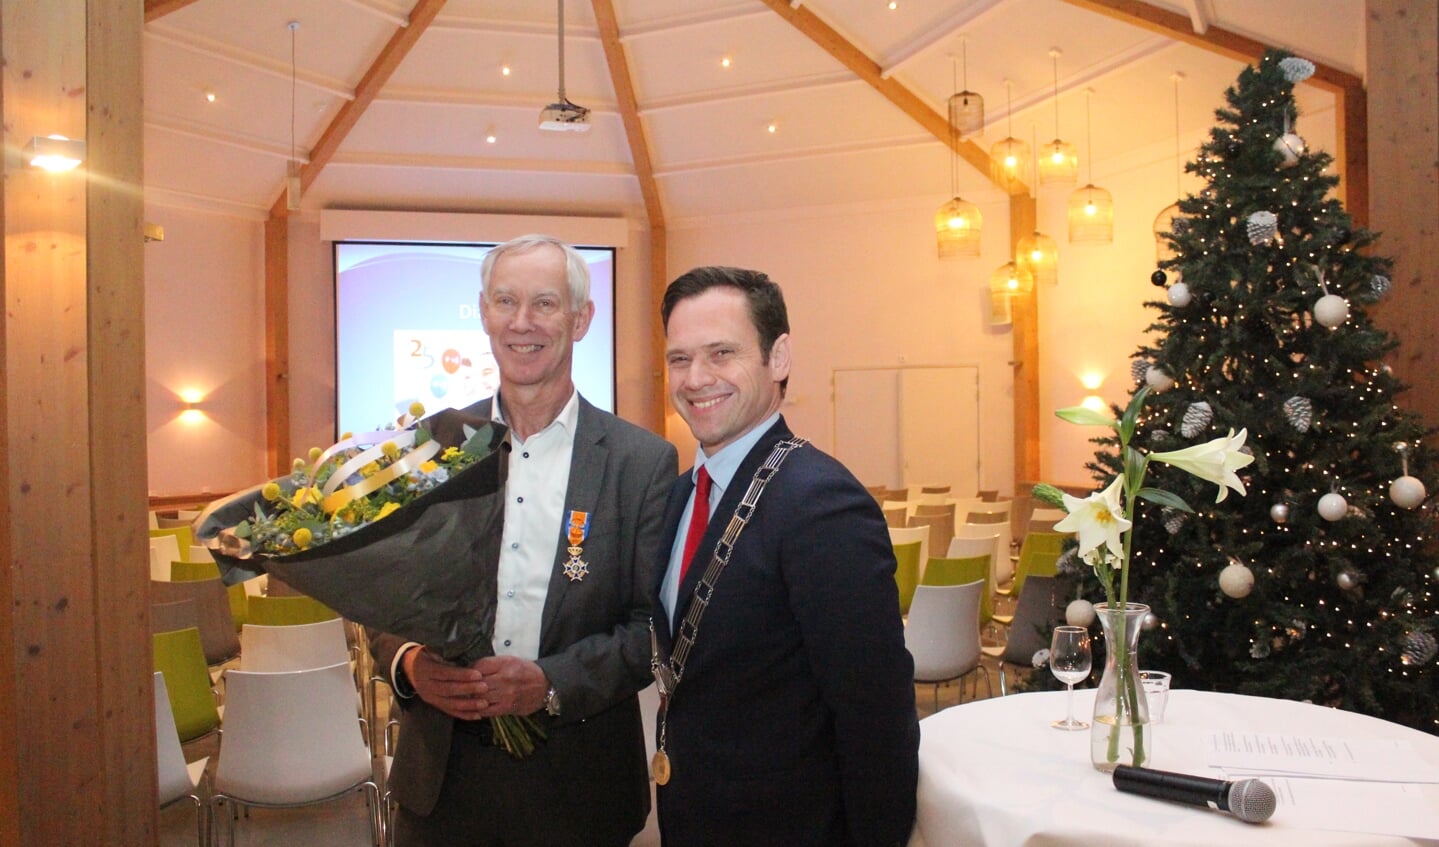 De heer Remko Hooijer ontving uit handen van burgemeester Sjoerd Potters de K.O. Officier in de orde van Oranje Nassau. 